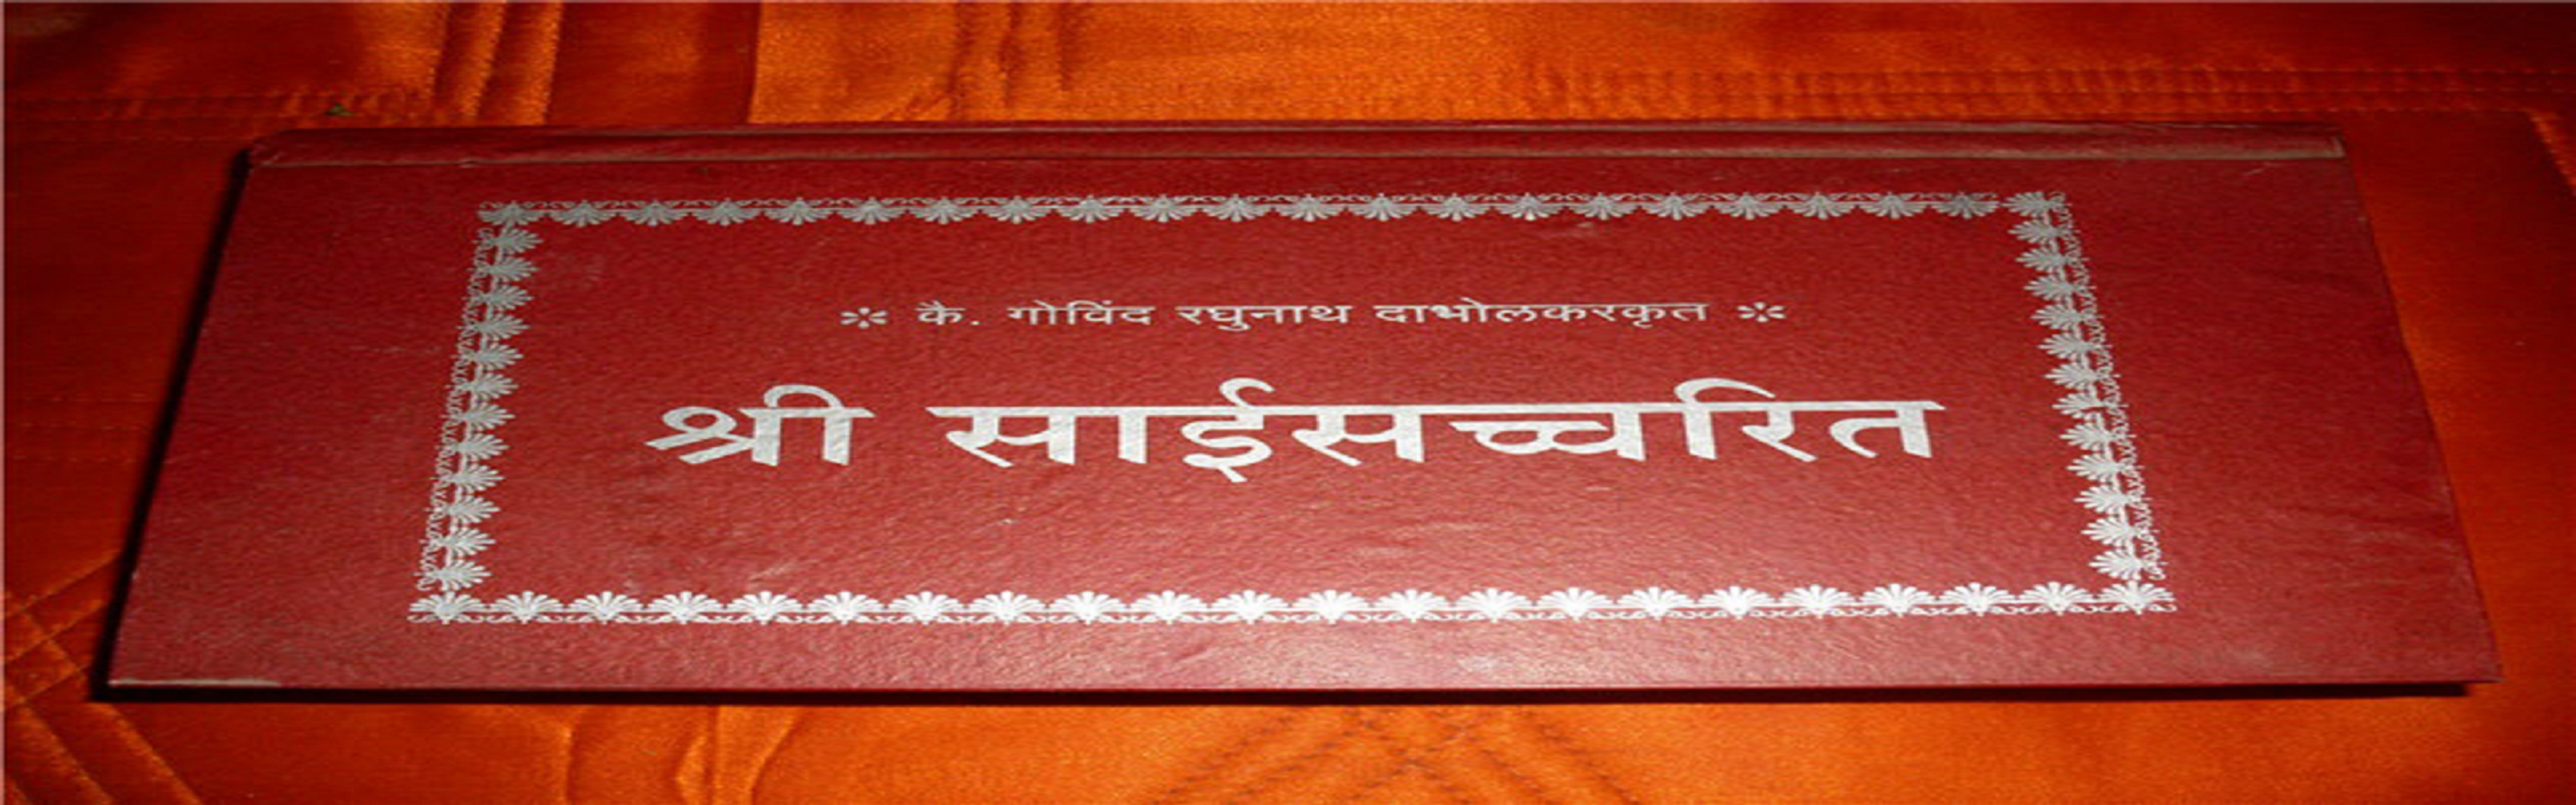 Saibaba_satcharitra_book